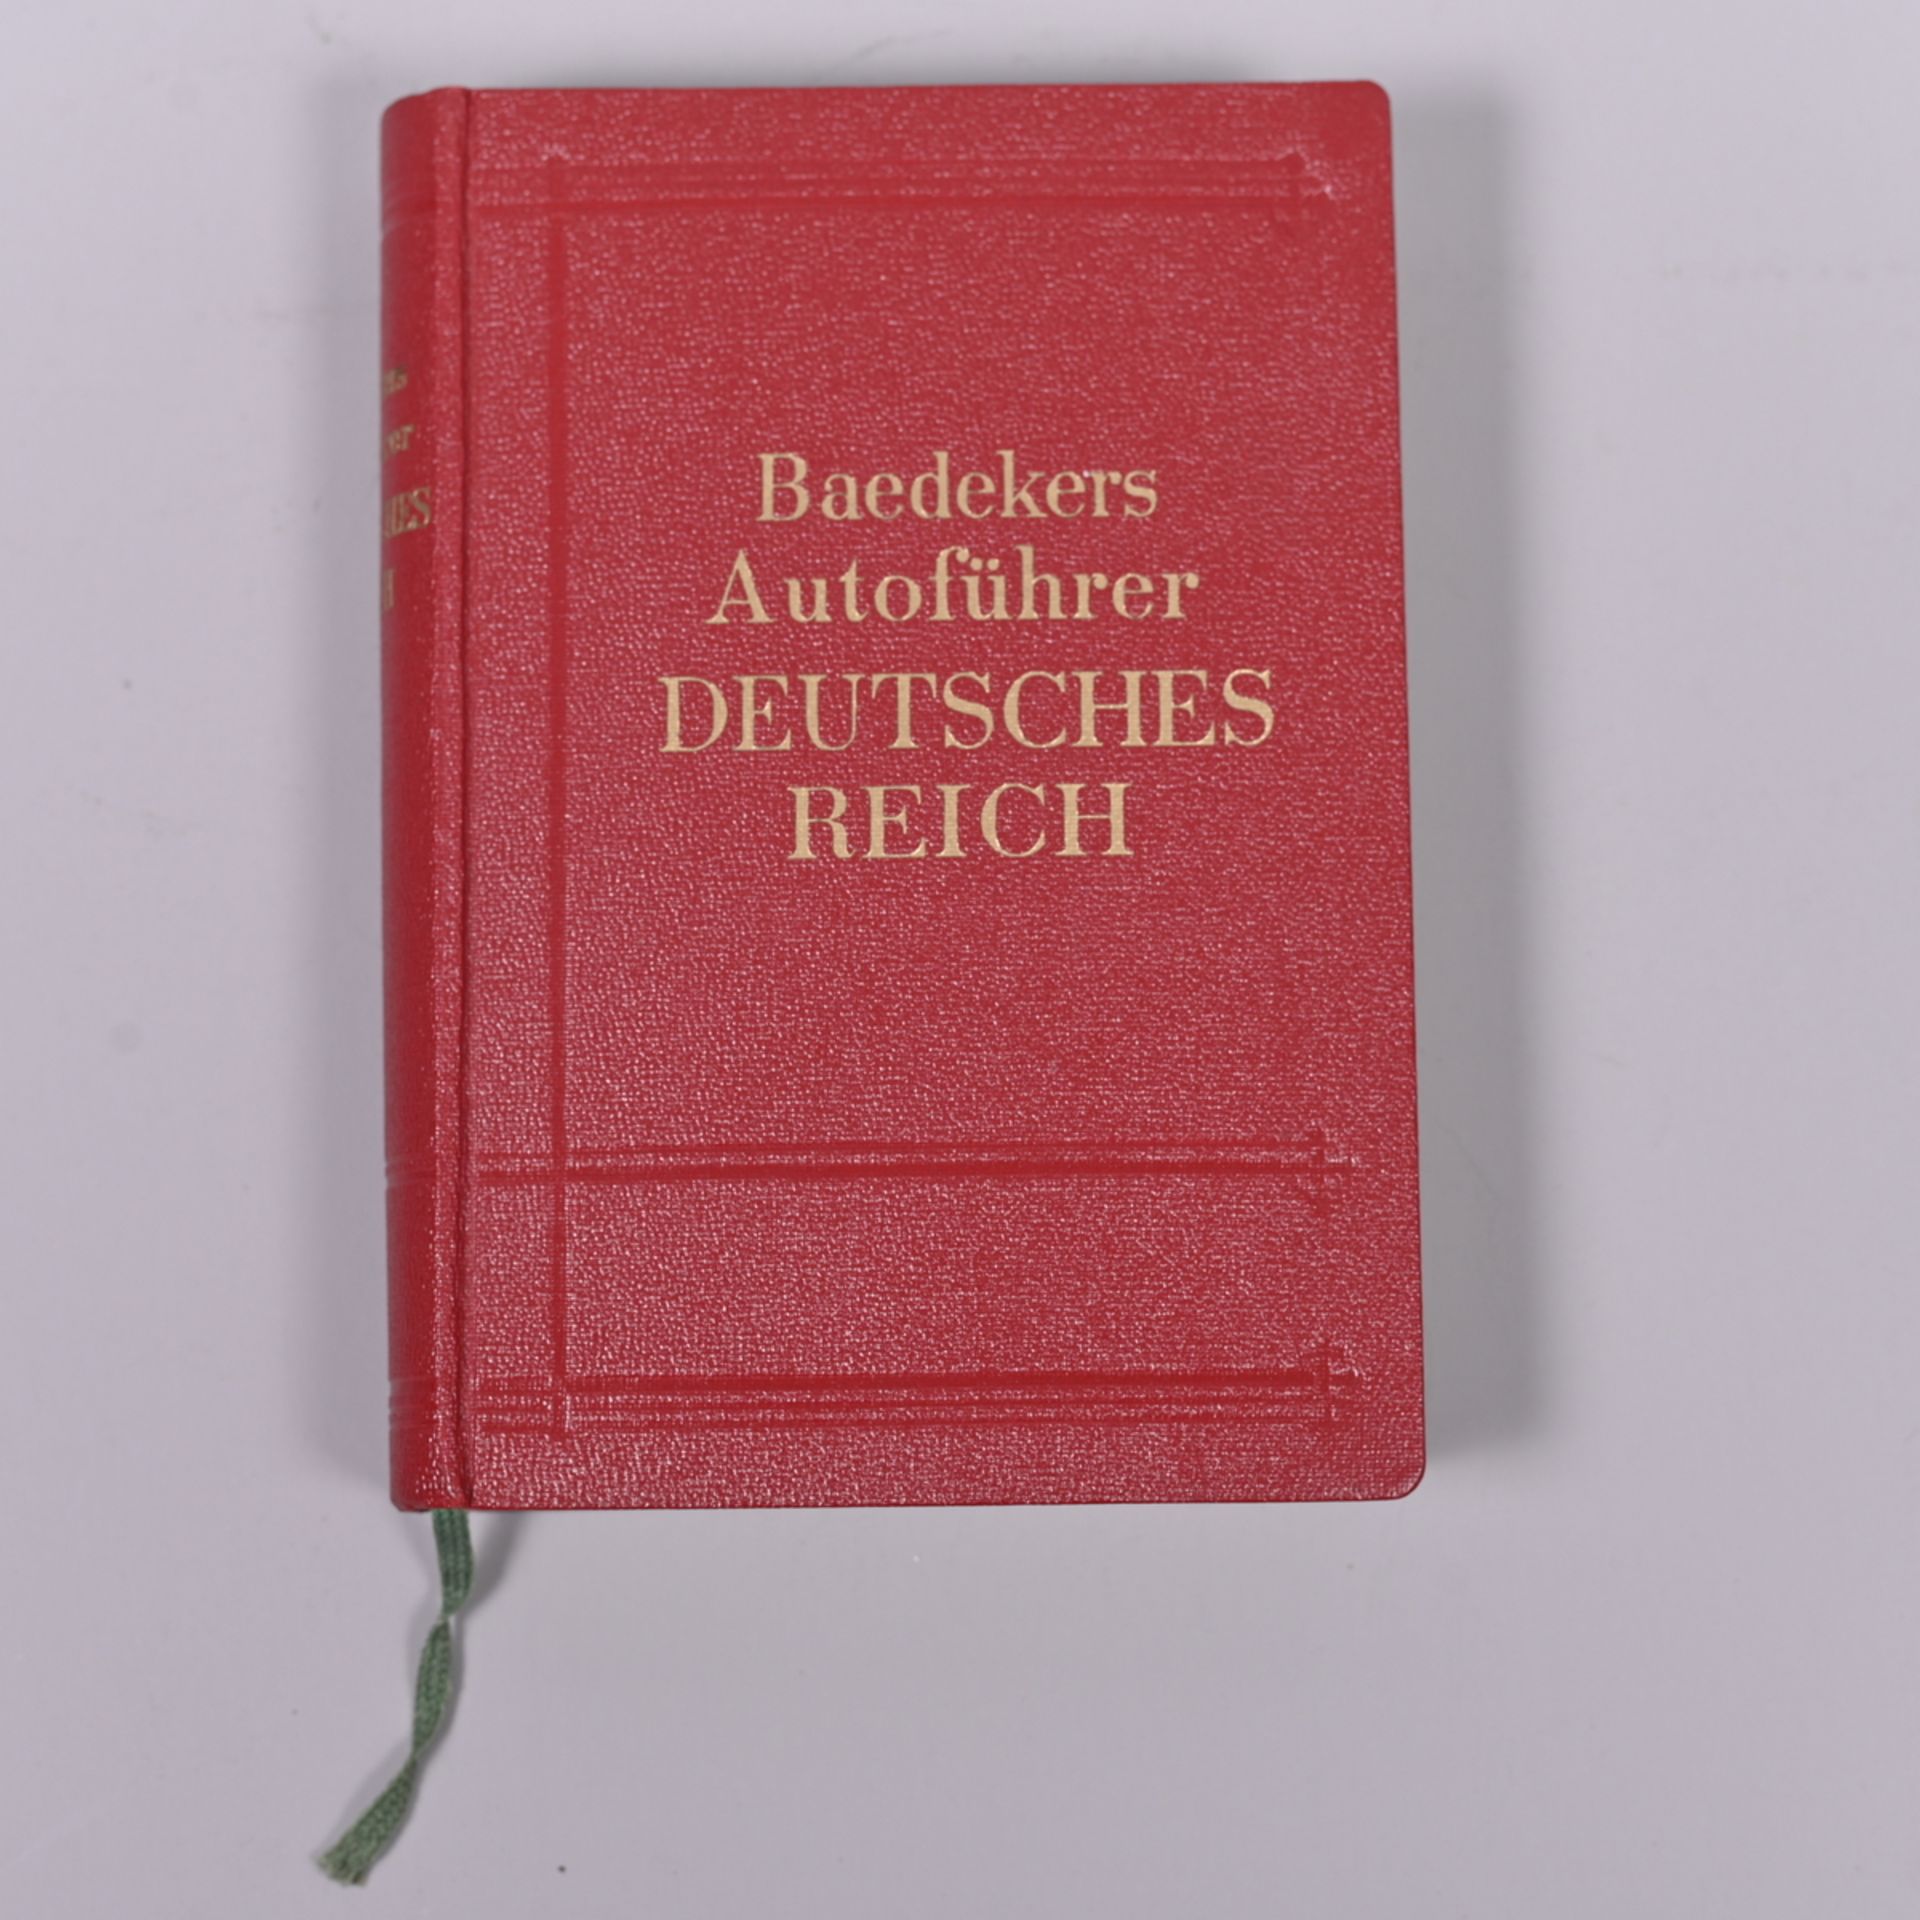 Baedekers Autoführer DEUTSCHES REICH Band 1, Leipzig Karl Baedeker 1938, 1a Zustand mit allen